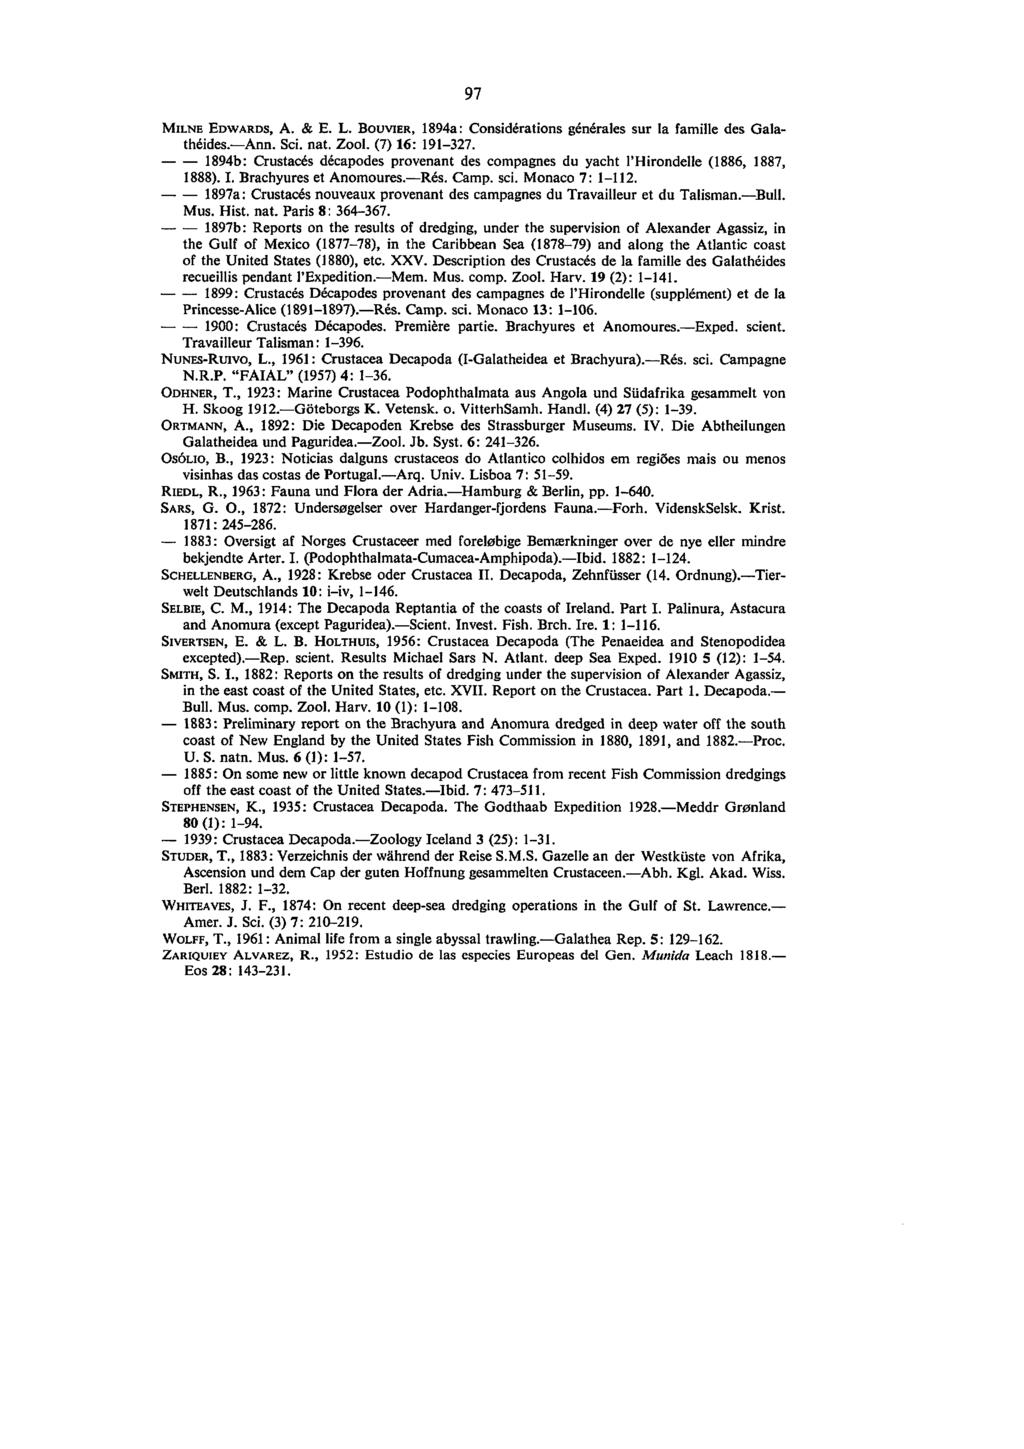 97 MILNE EDWARDS, A. & E. L. BOUVIER, 1894a: Considerations generates sur la famille des Galatheides Ann. Sci. nat. Zool. (7) 16: 191-327.